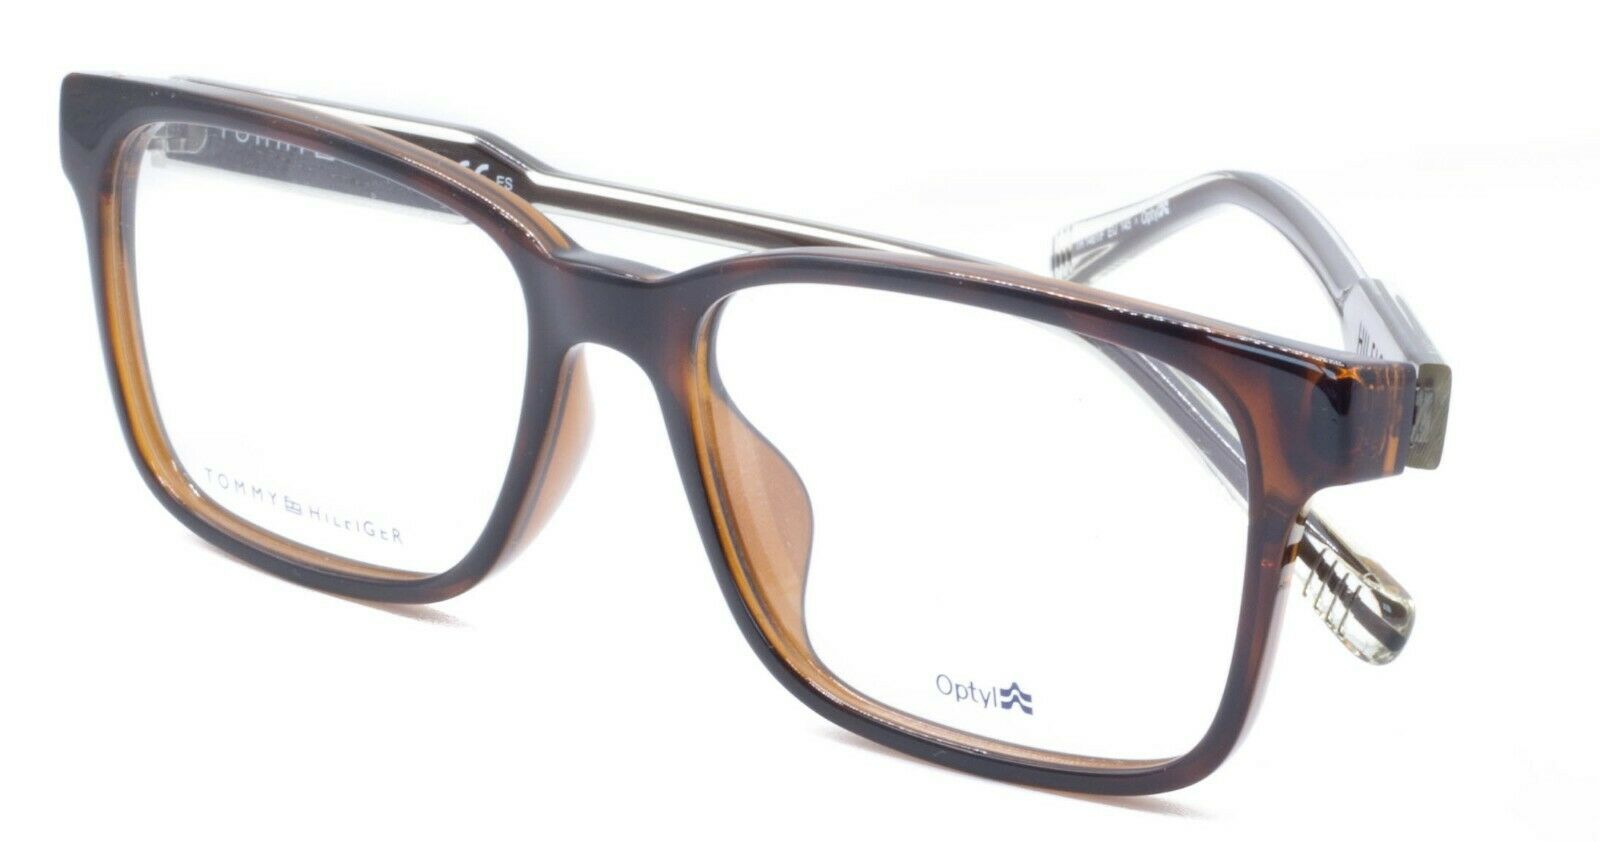 TOMMY HILFIGER TH 1461/F EIJ 54mm Eyewear FRAMES Glasses RX Optical Eyeglasses